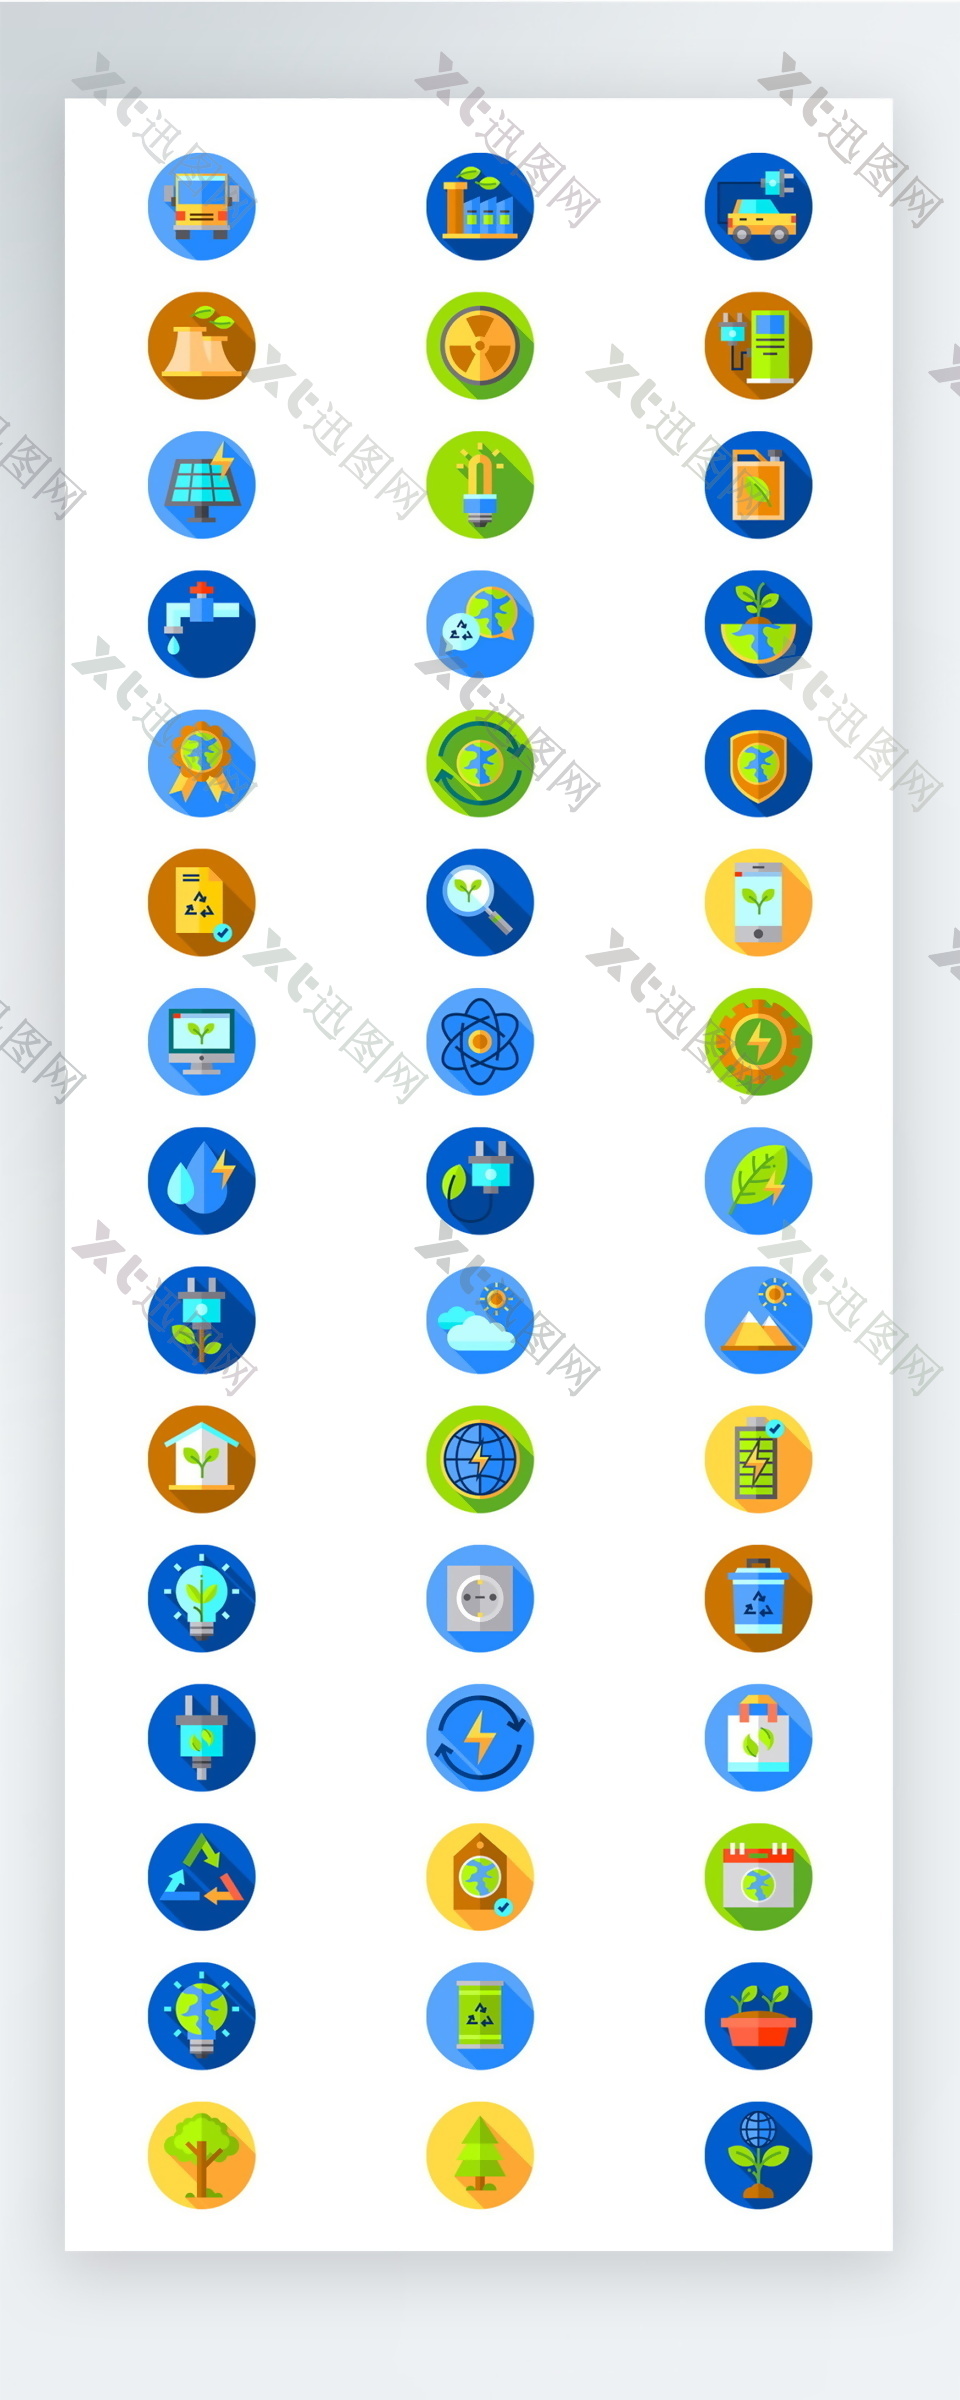 彩色低碳环保图标矢量AI素材icon